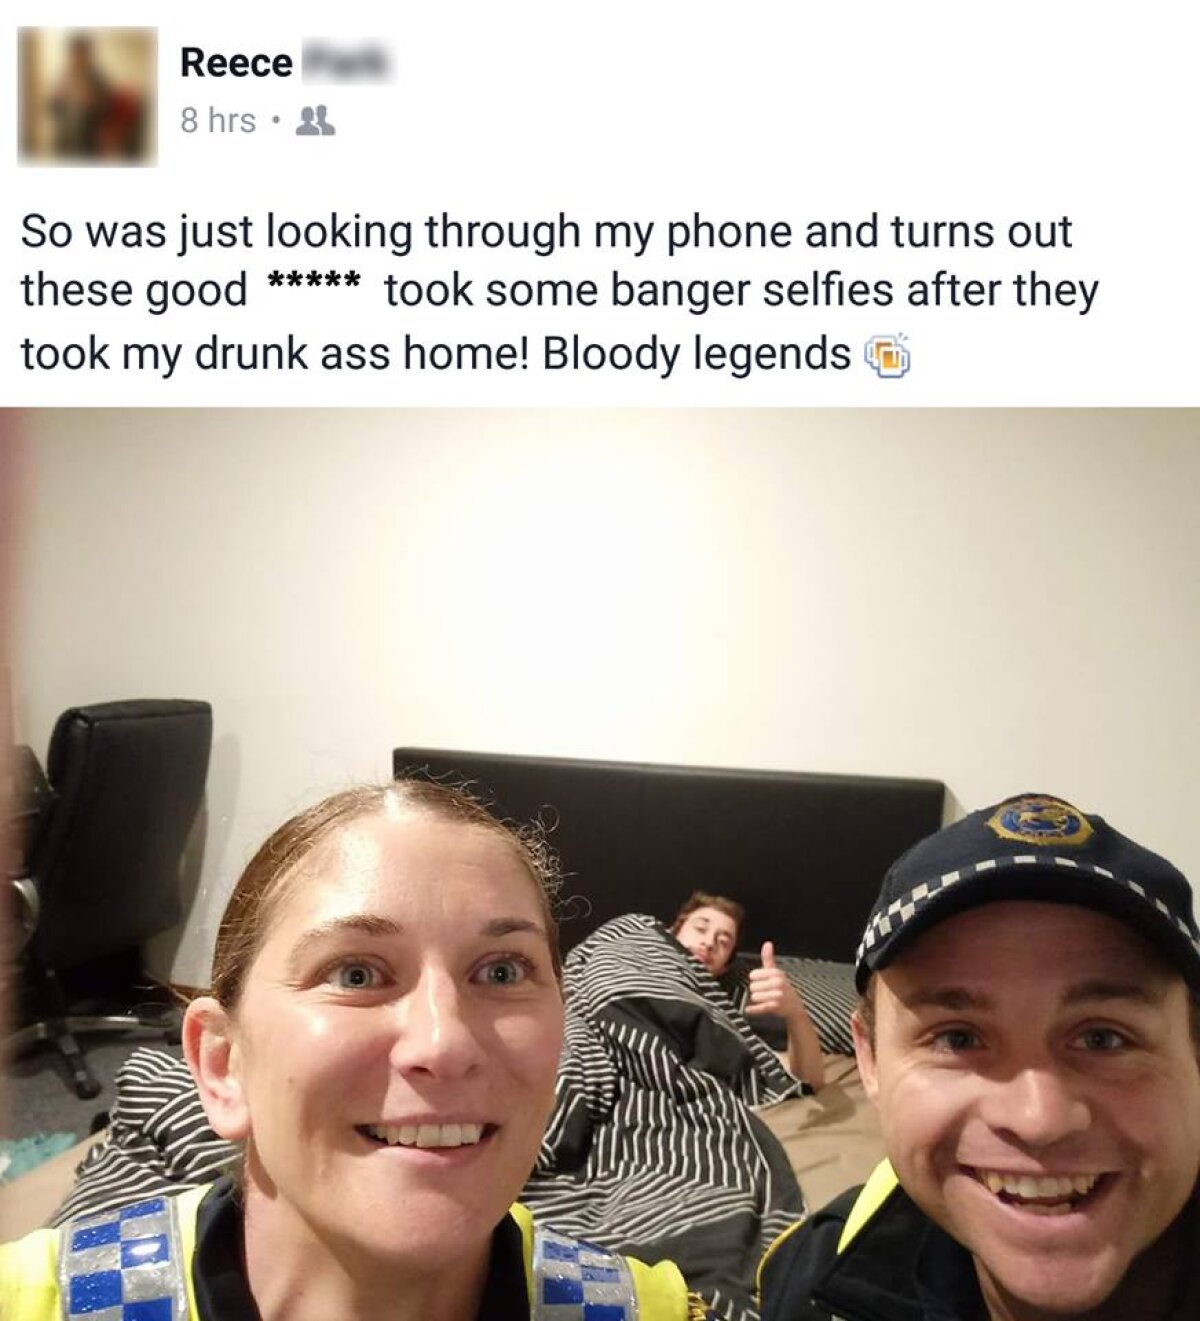 FOTO S-a trezit acasă după o noapte de beție și nu i-a venit să creadă ce a găsit în telefonul său